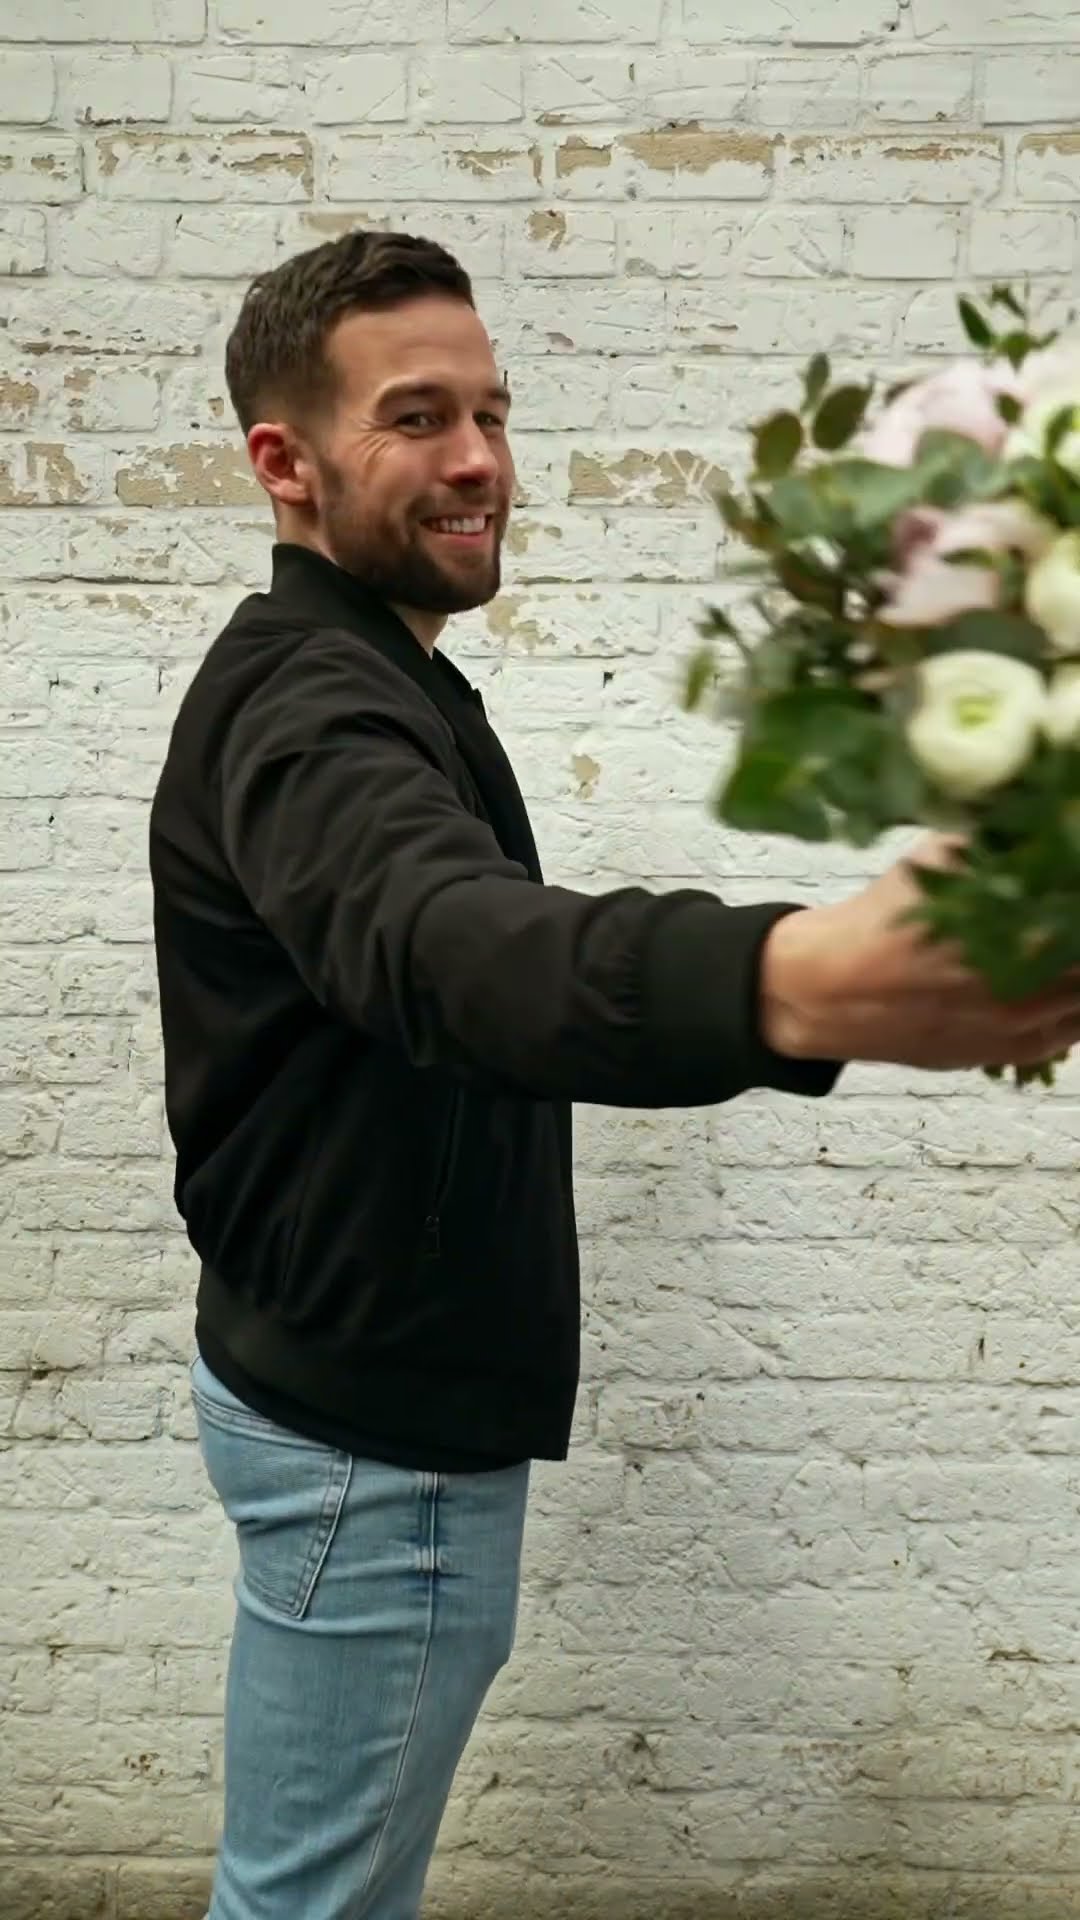 Brautstrauss einfach selber machen - DIY Floristik Anleitung vom Profi - Brautstrauss Shabby chic